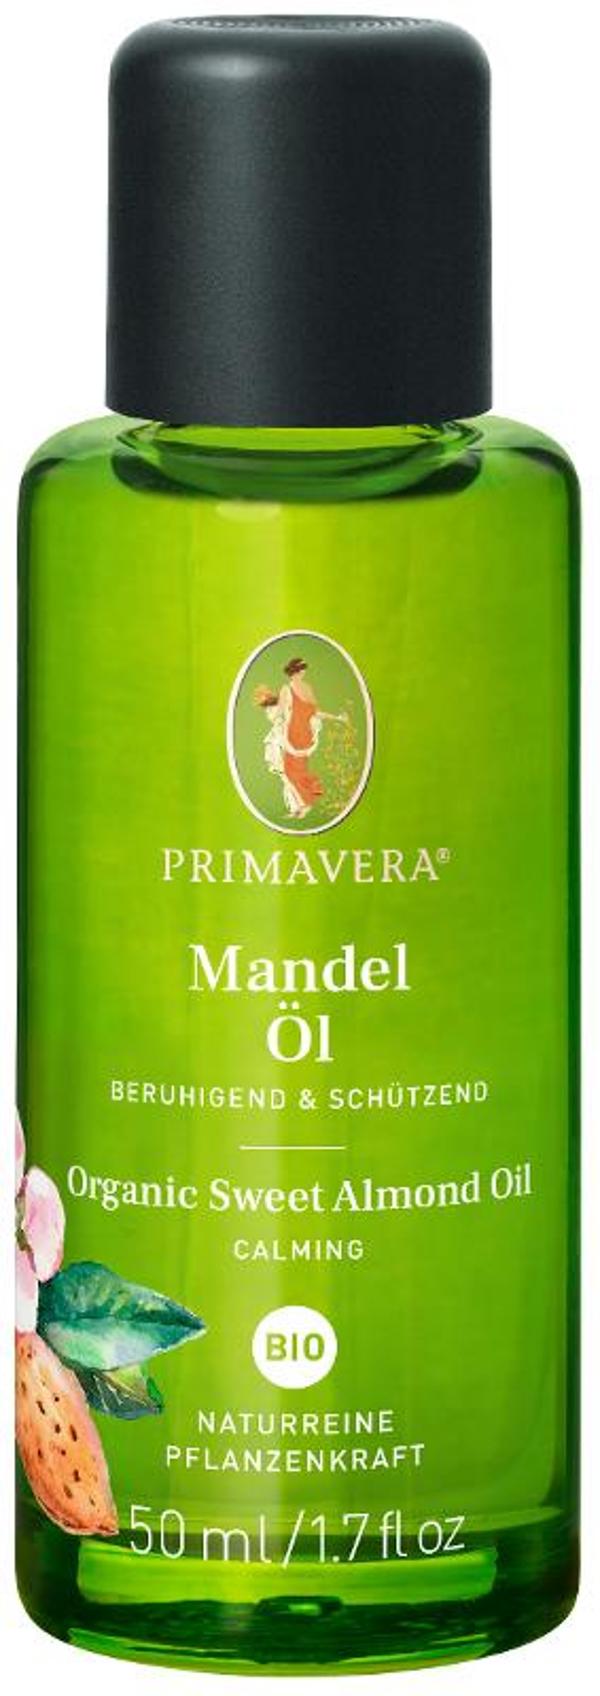 Produktfoto zu Primavera Mandelöl - 50ml